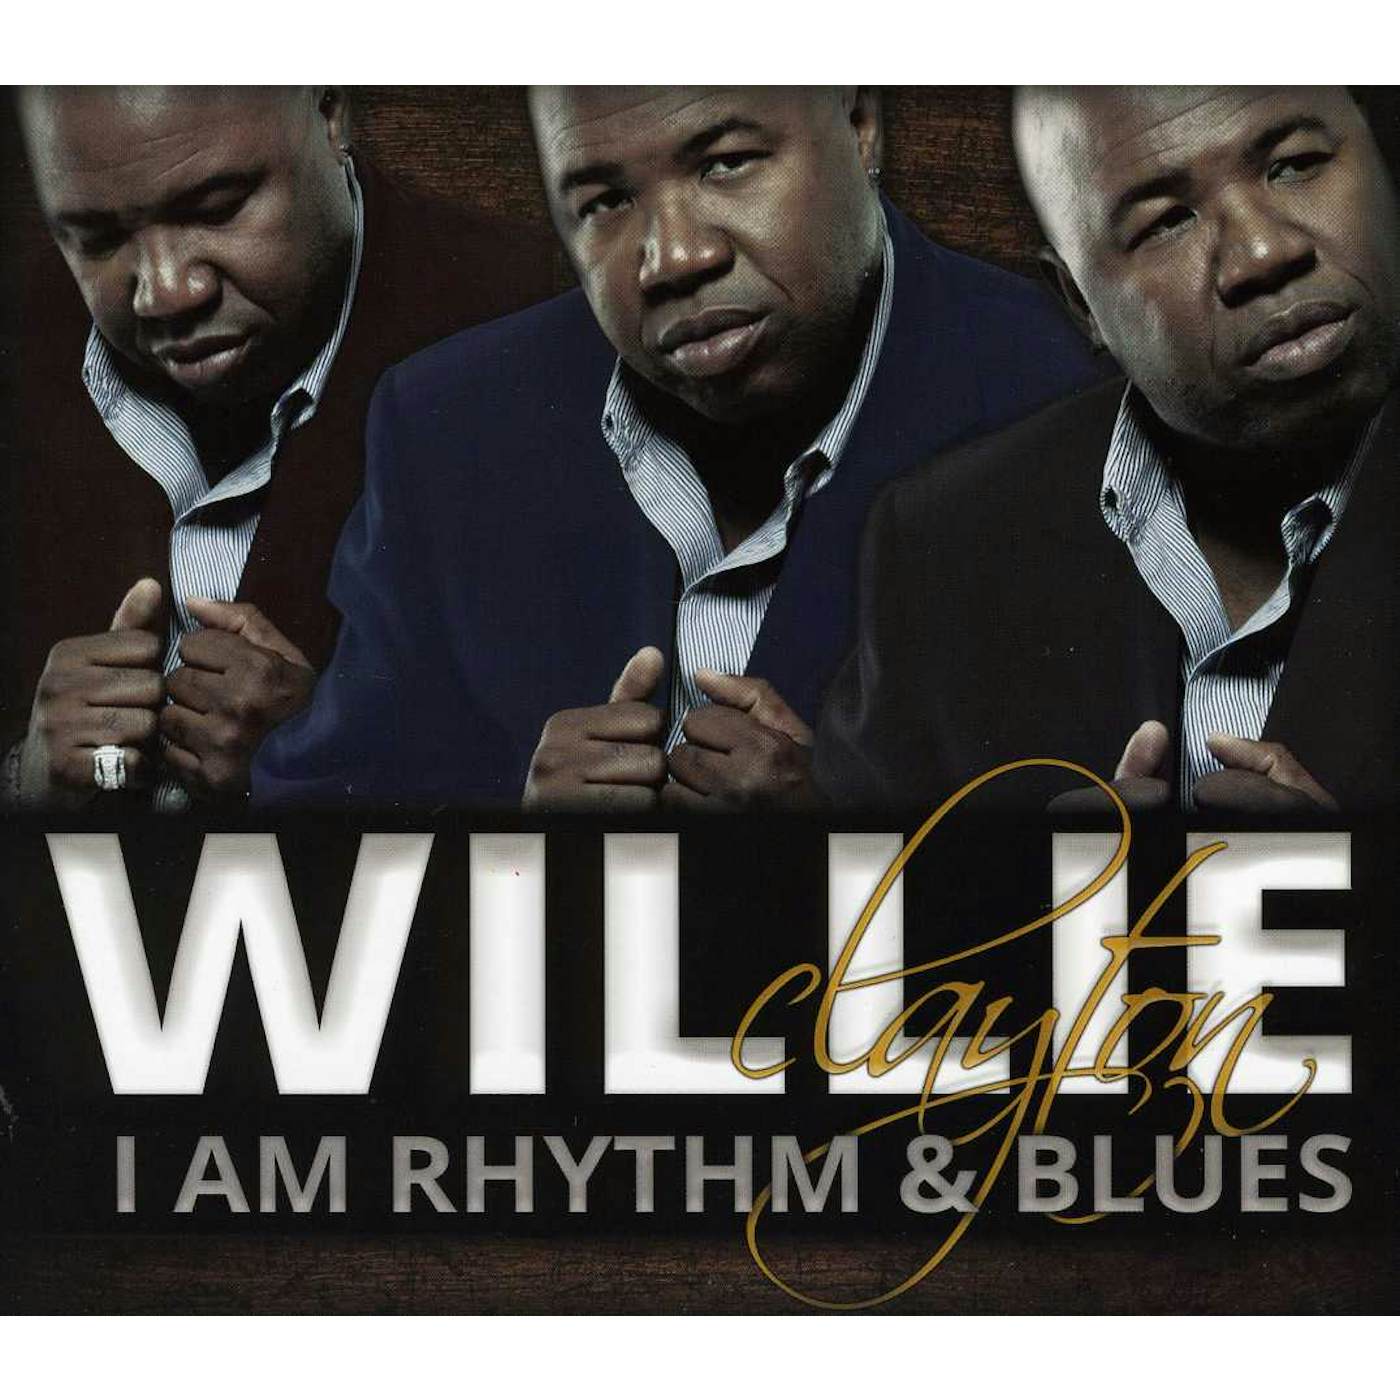 Willie Clayton RHYTHM & BLUES CD